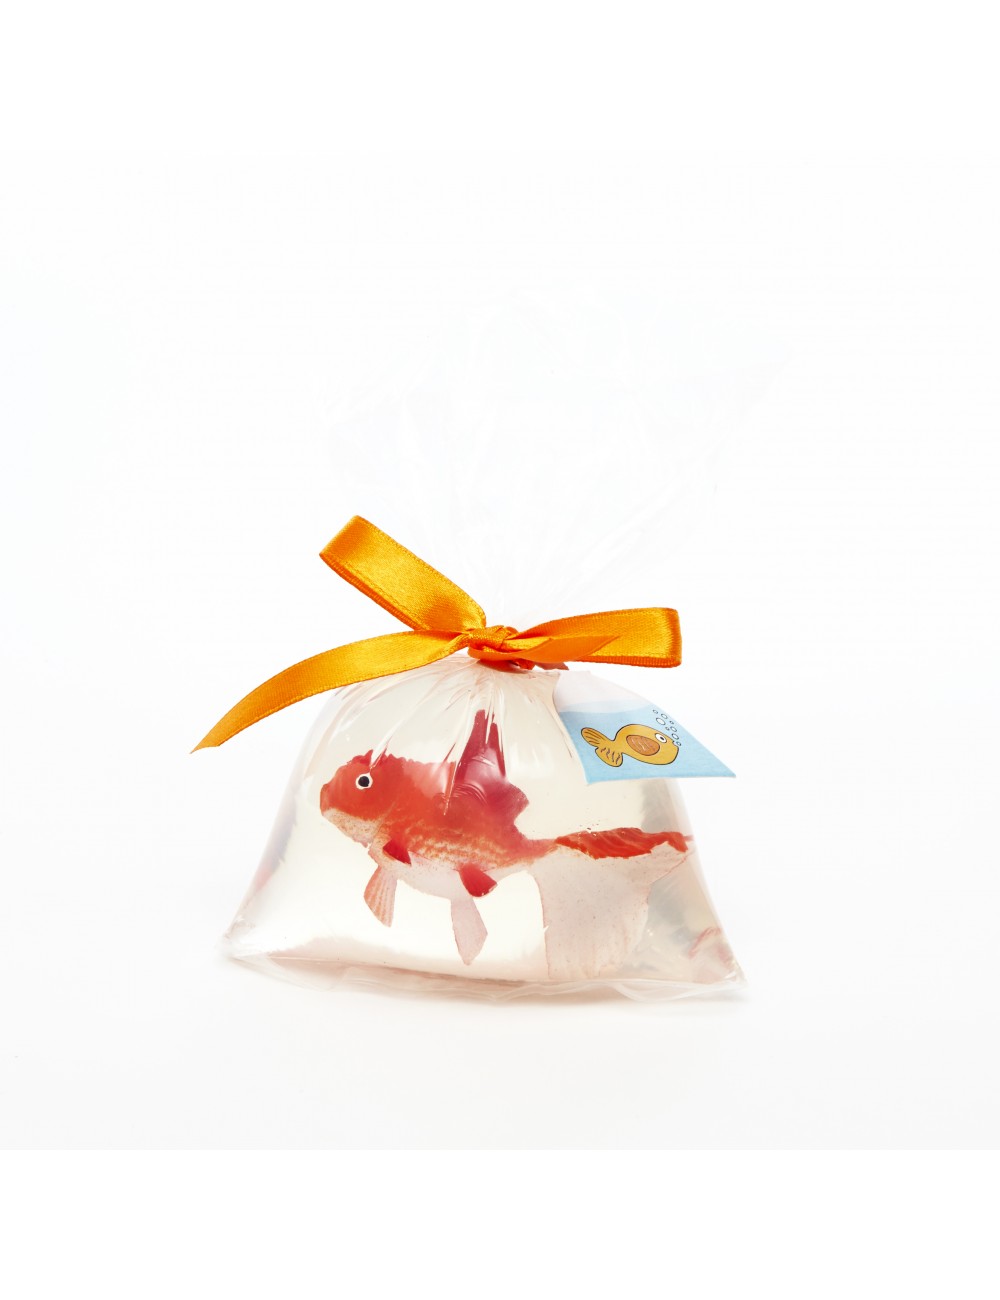 Vite, libérez le poisson rouge! Ce savon magique contient une belle  surprise sous la forme d'un jouet de poisson. C'est le peti